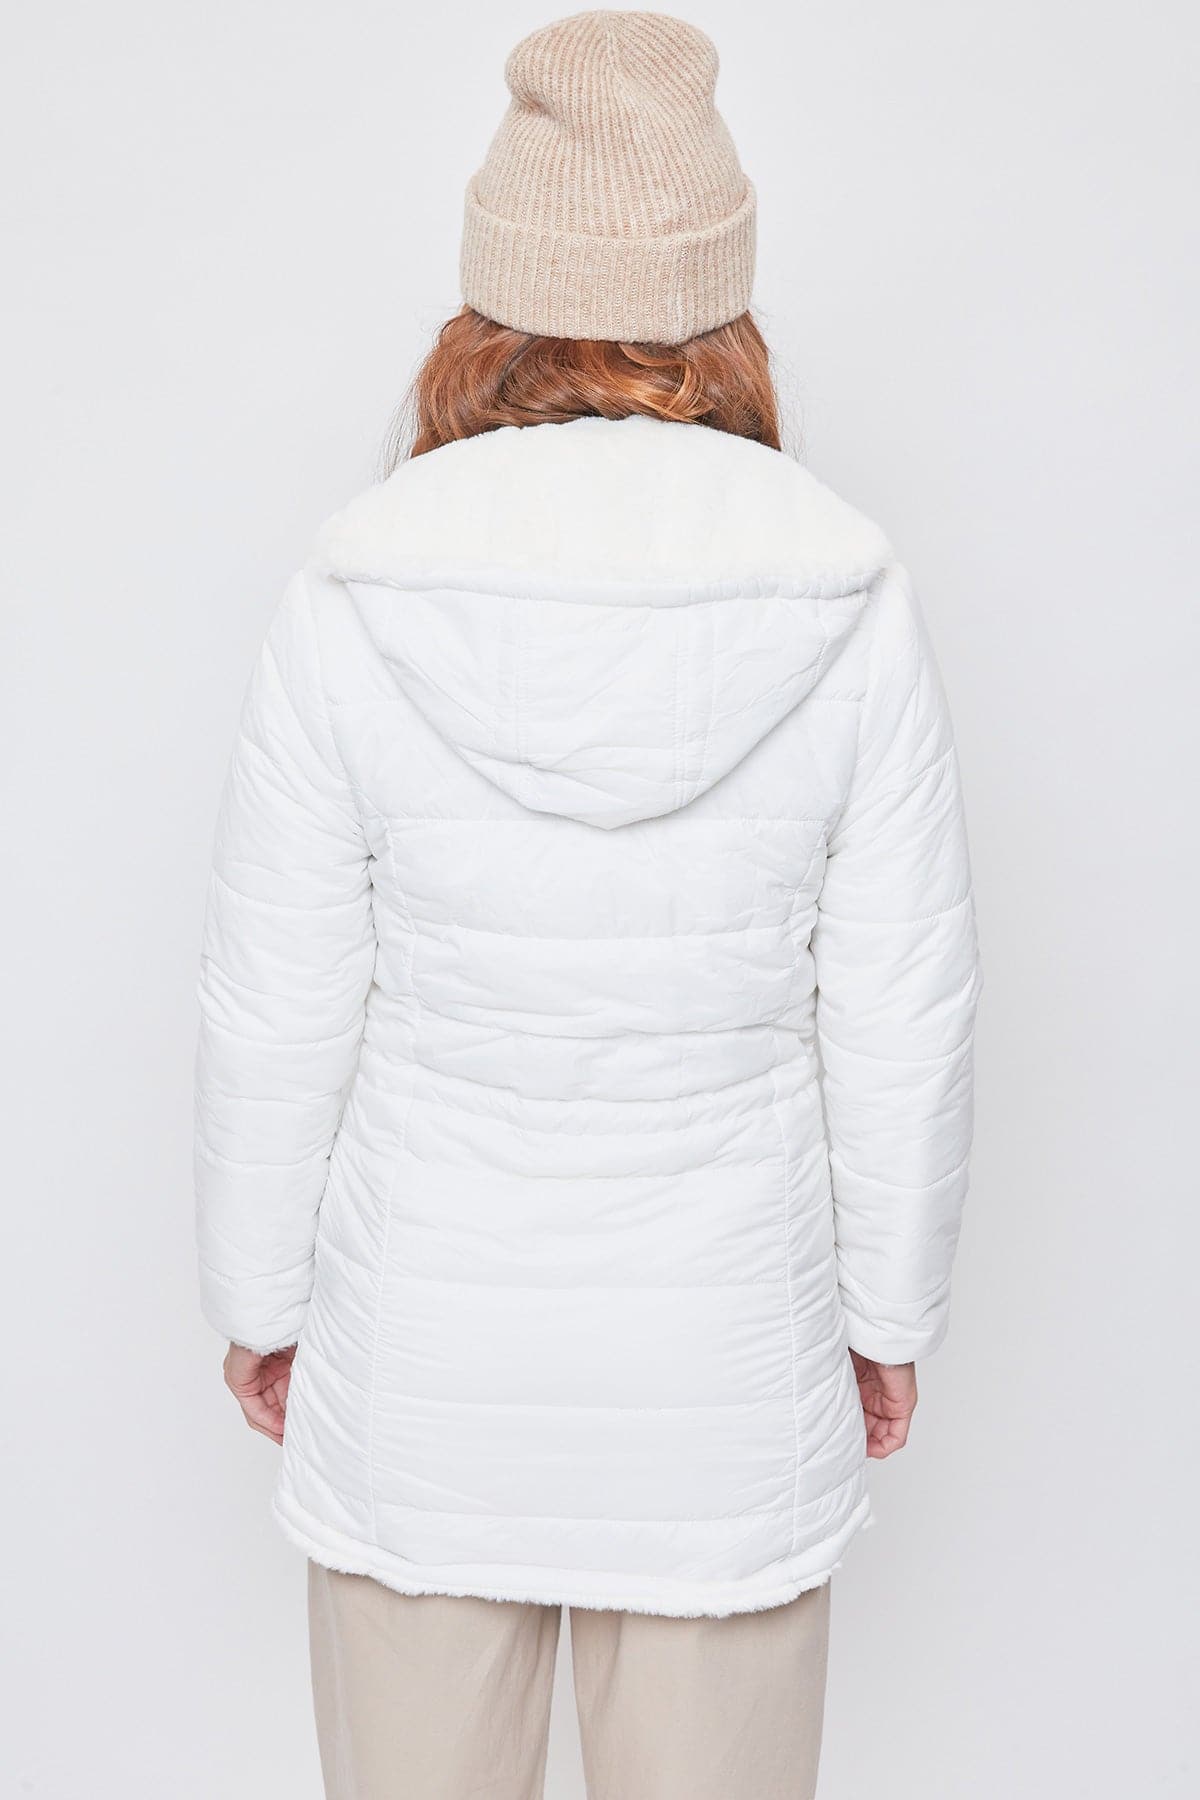 Women's Winter Faux Fur Reversible Jacket